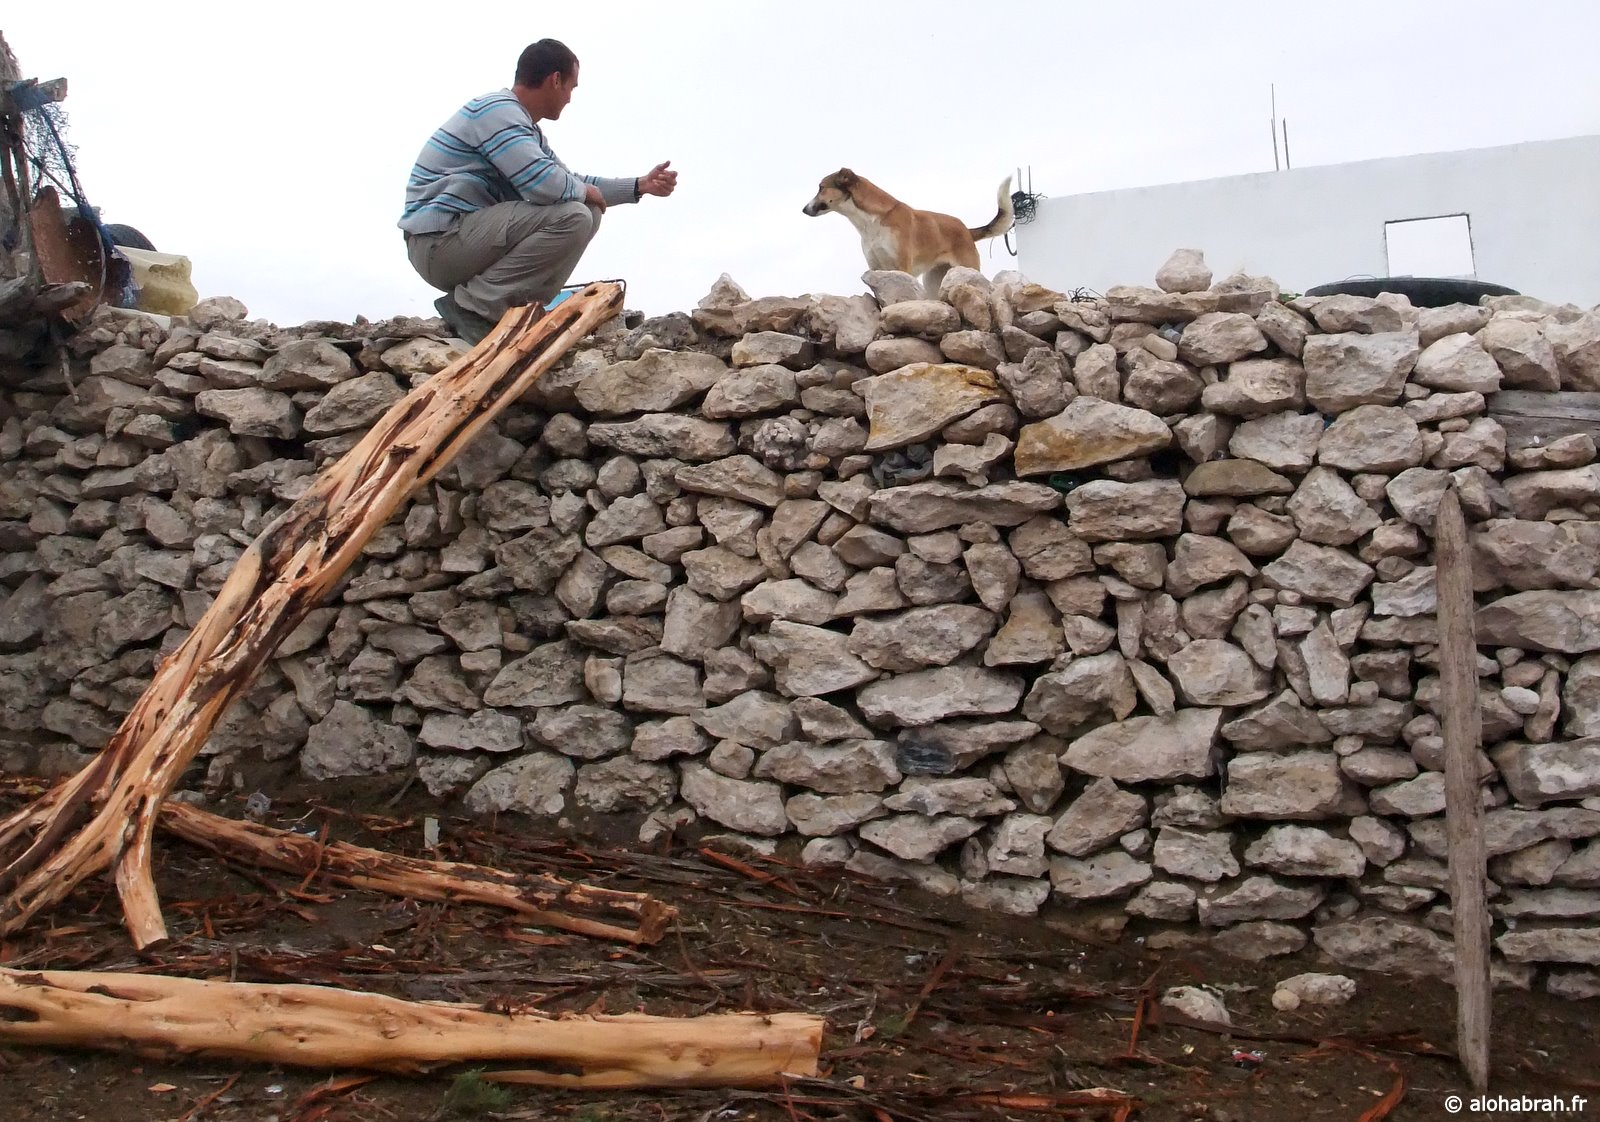 Ce chien a passé toute sa vie sur le toit de cette cahutte. Nous avons essayé de lui rendre sa liberté, sans succès © alohabrah.fr